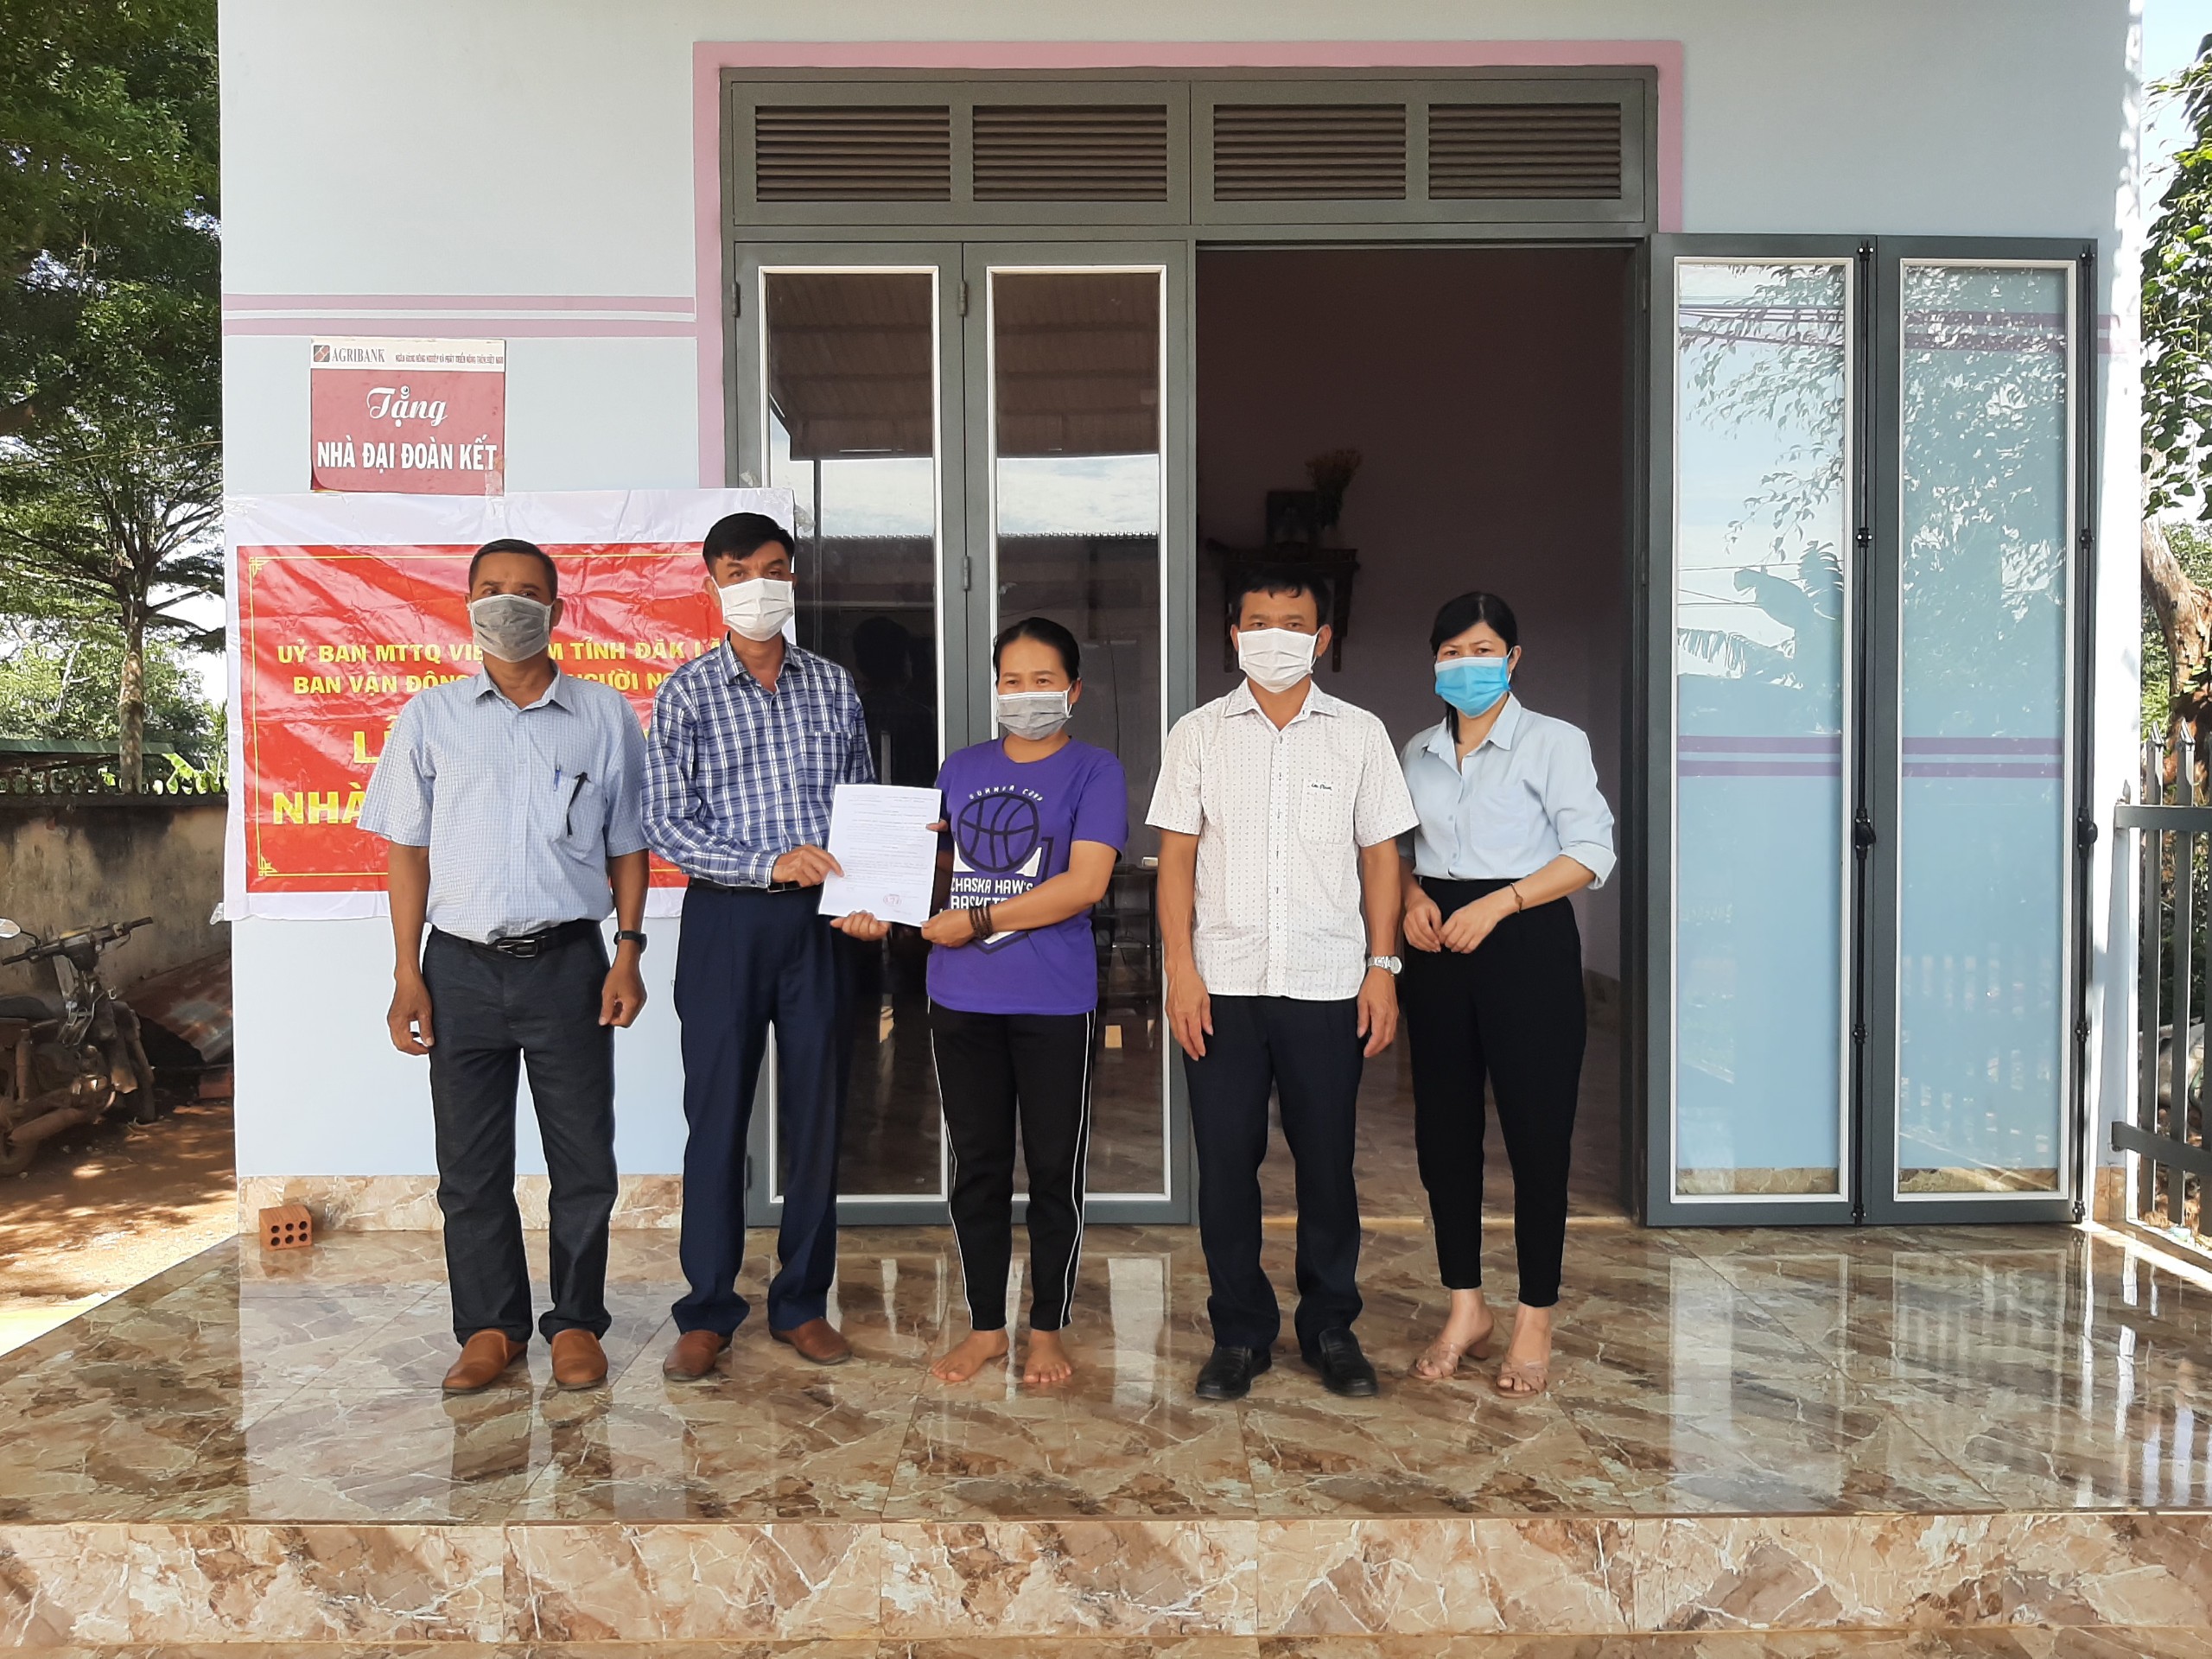 Ủy ban MTTQ Việt Nam huyện vừa tổ chức bàn giao nhà “Đại đoàn kết” cho các gia đình có hoàn cảnh khó khăn trên địa bàn.